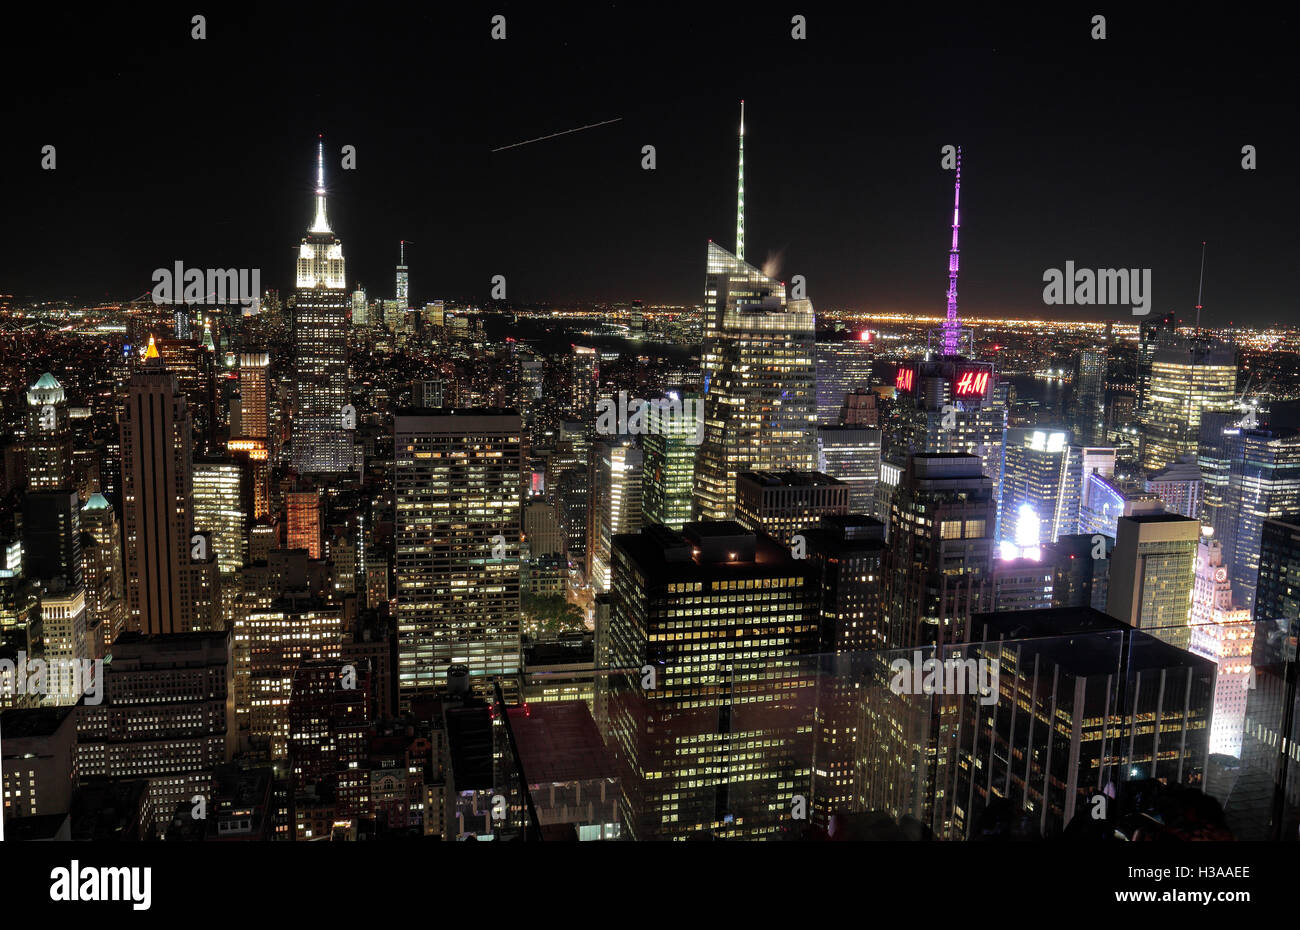 Luftbild von der "Top of the World" Aussichtsplattform in Richtung Times Square & Innenstadt von Manhattan, New York. Stockfoto